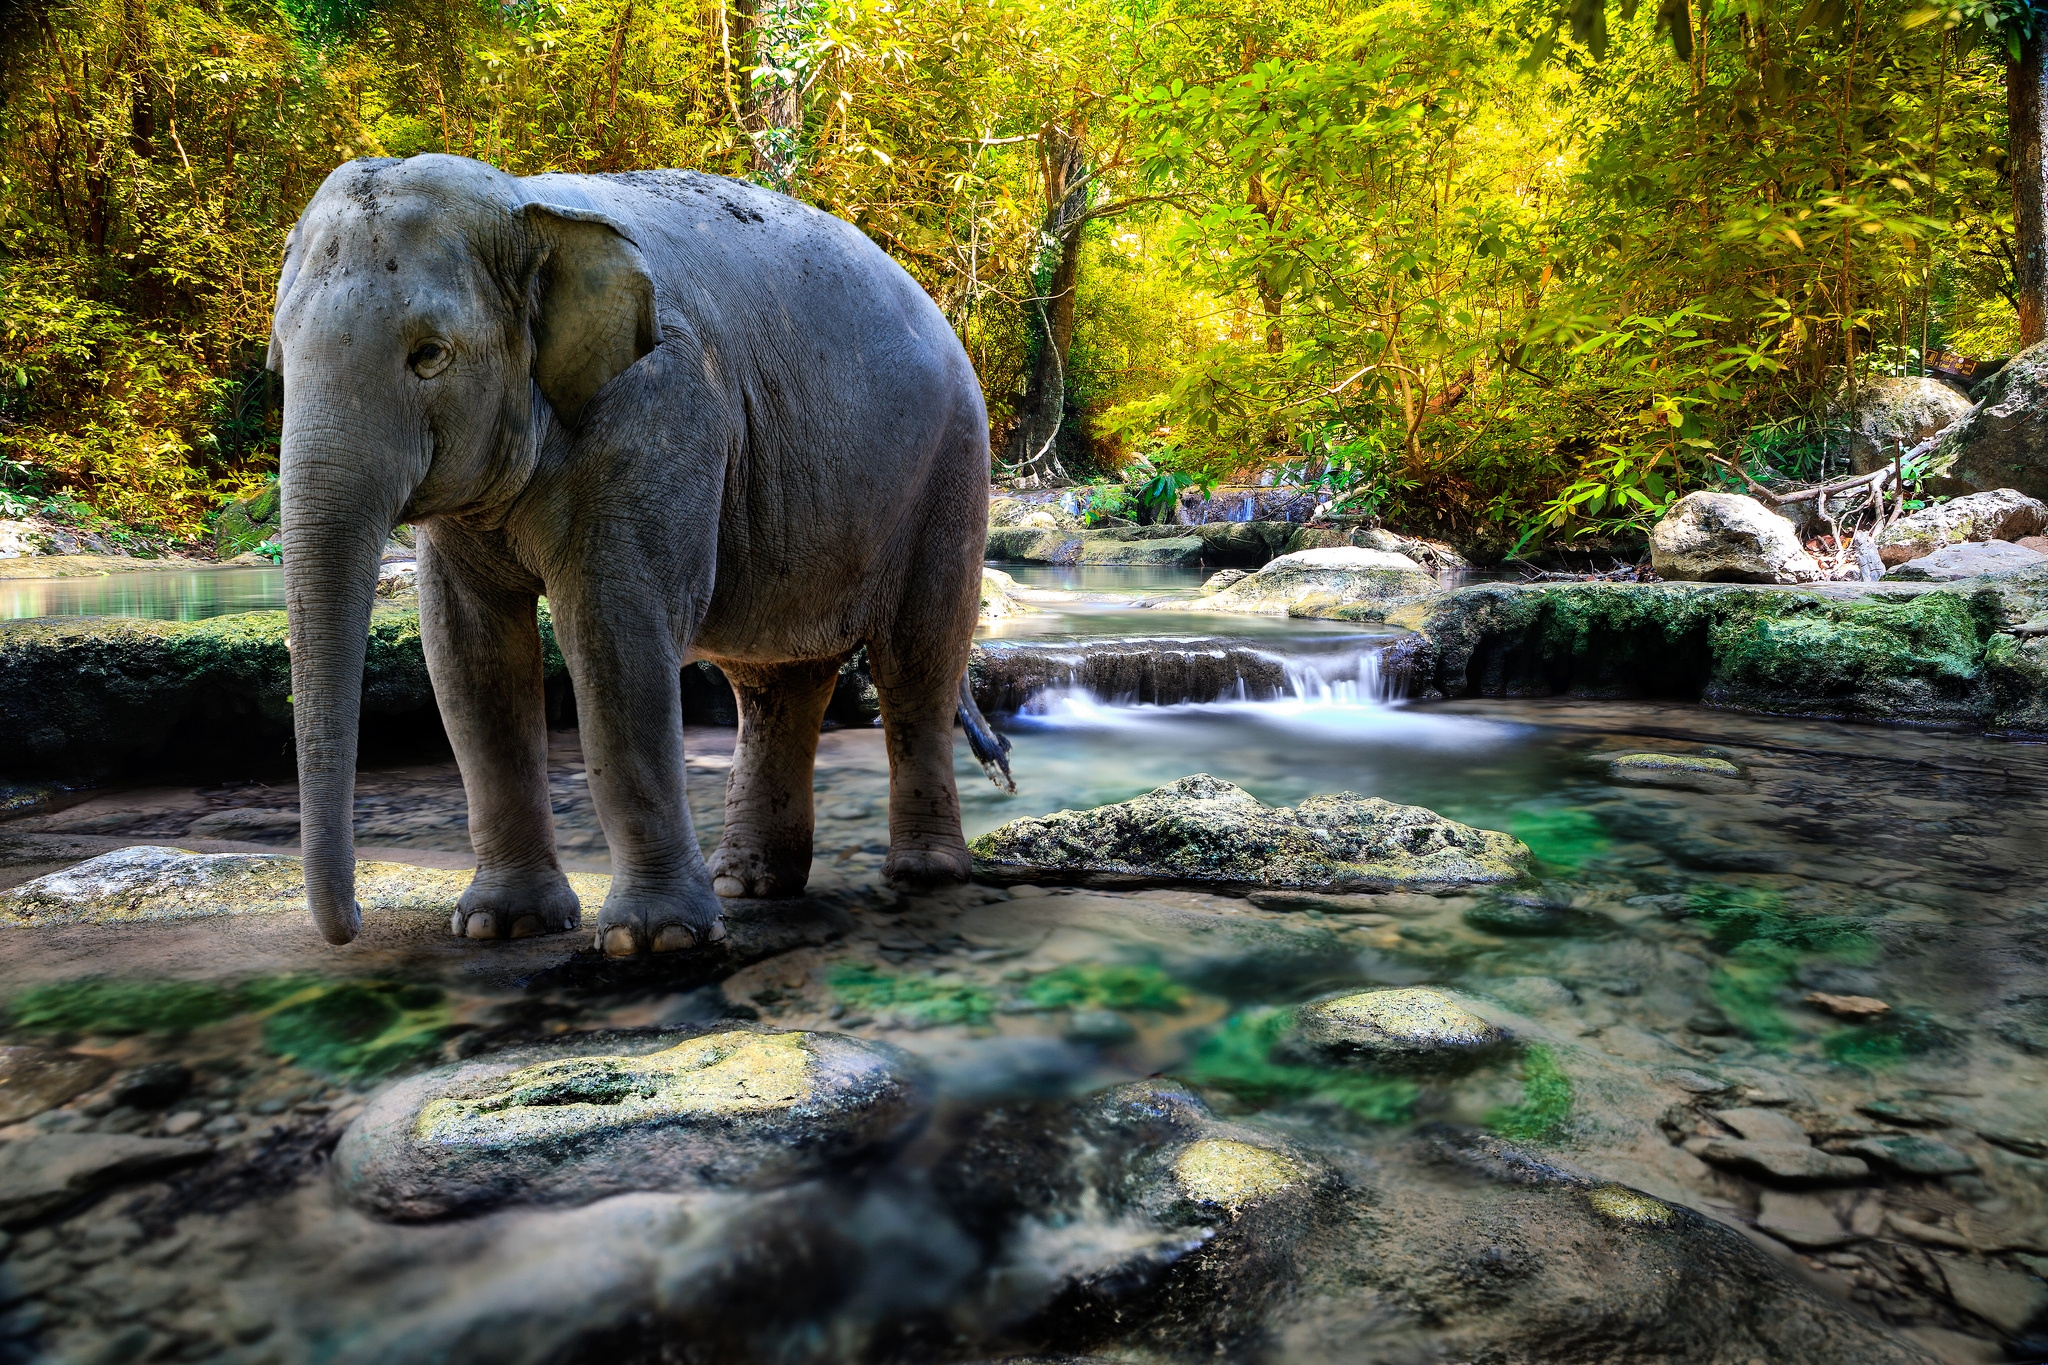 stones, animals, water, trees, elephant